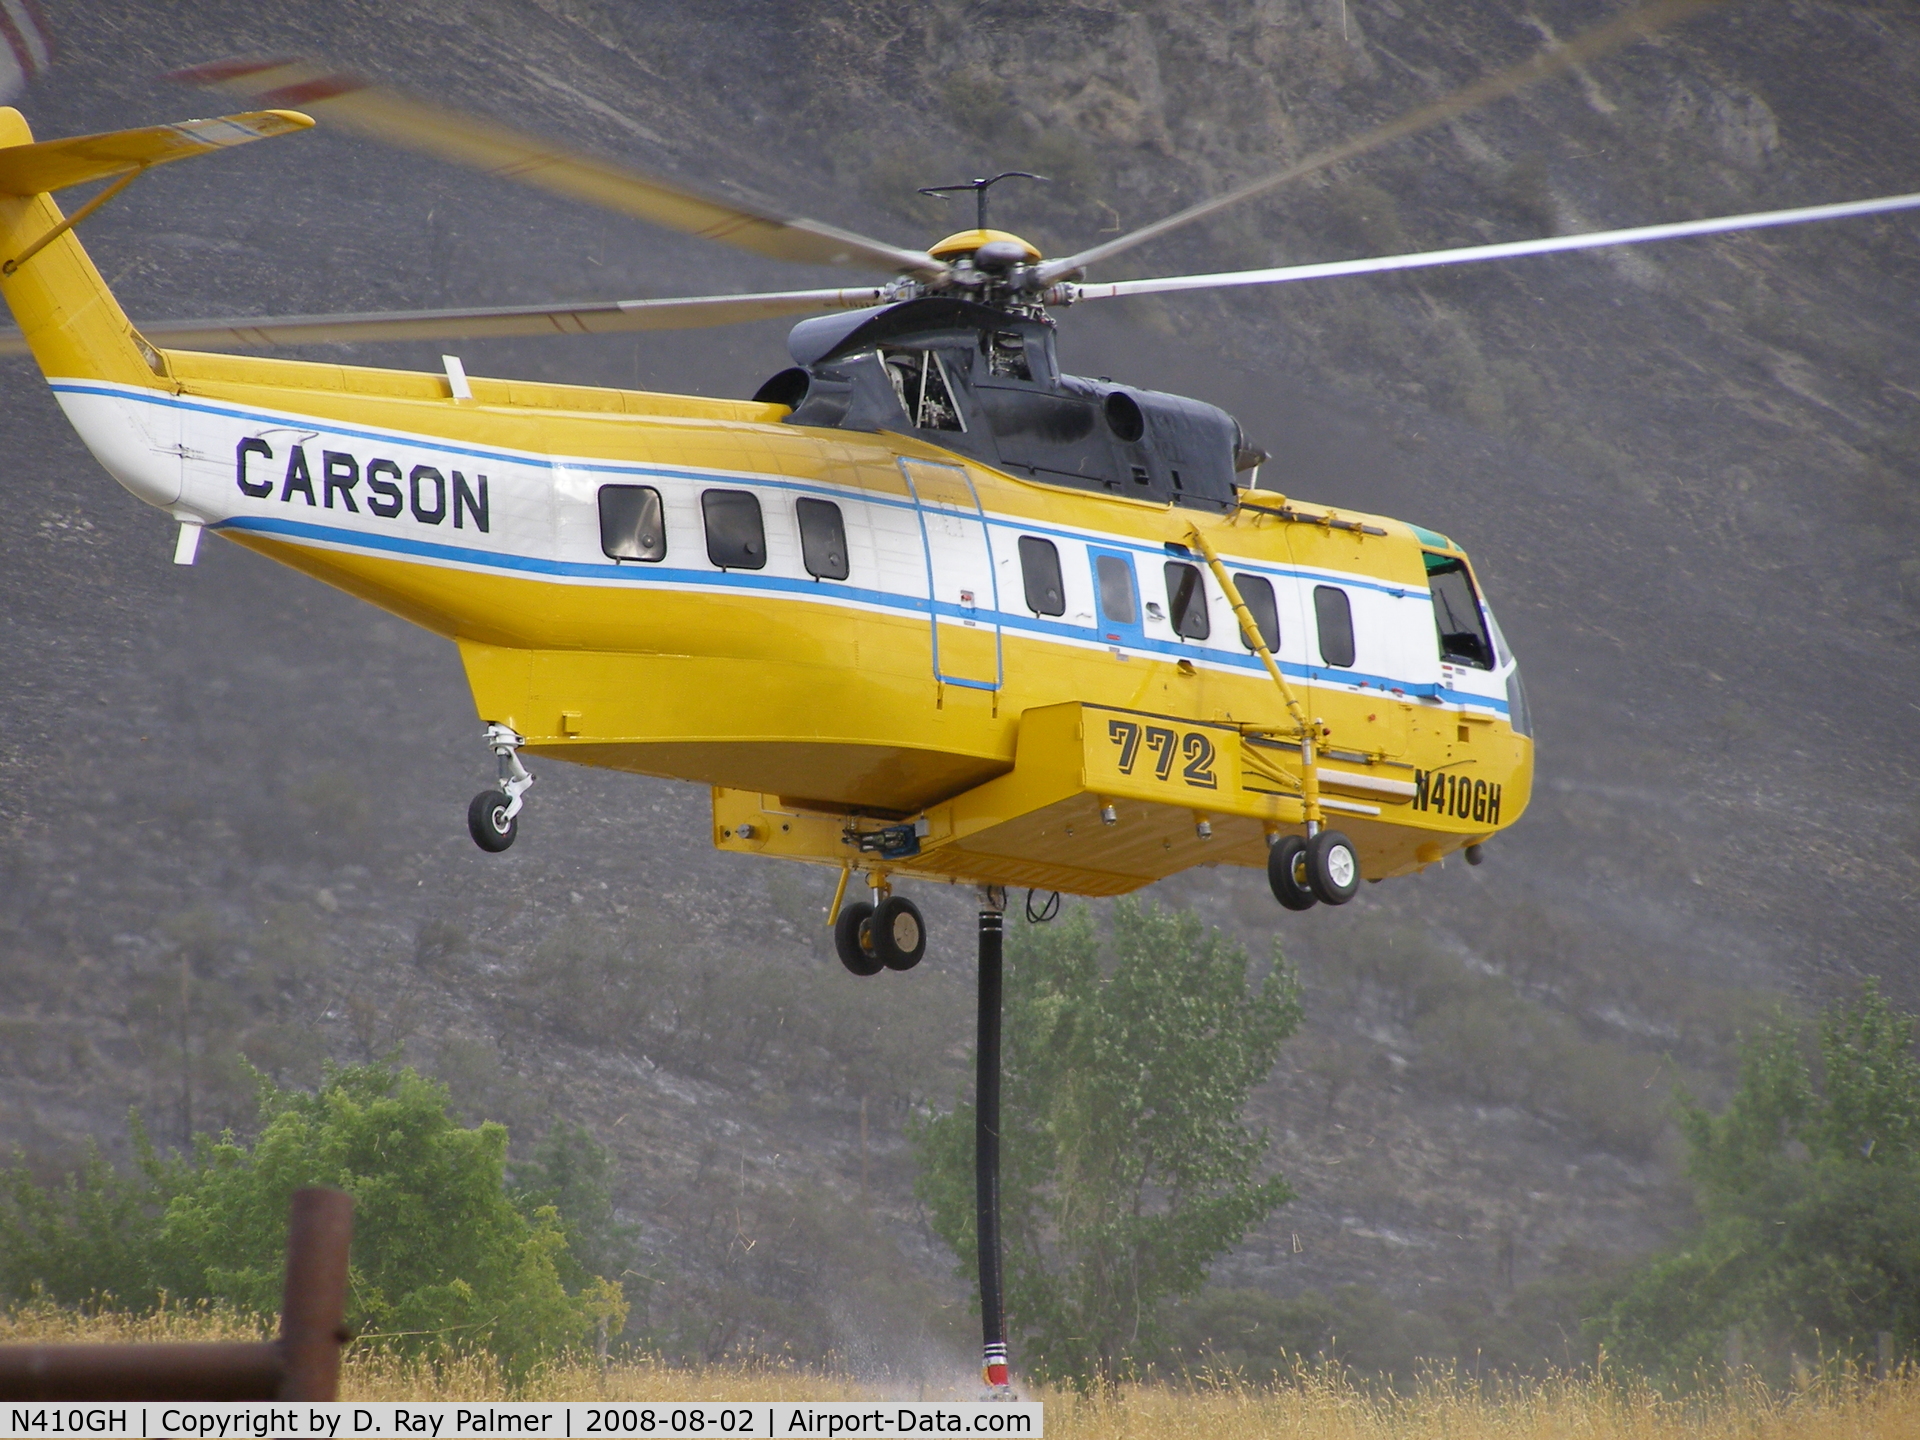 N410GH, 1975 Sikorsky S-61N C/N 61749, Used to drop water on Fire in Payson, Utah 08-02-08